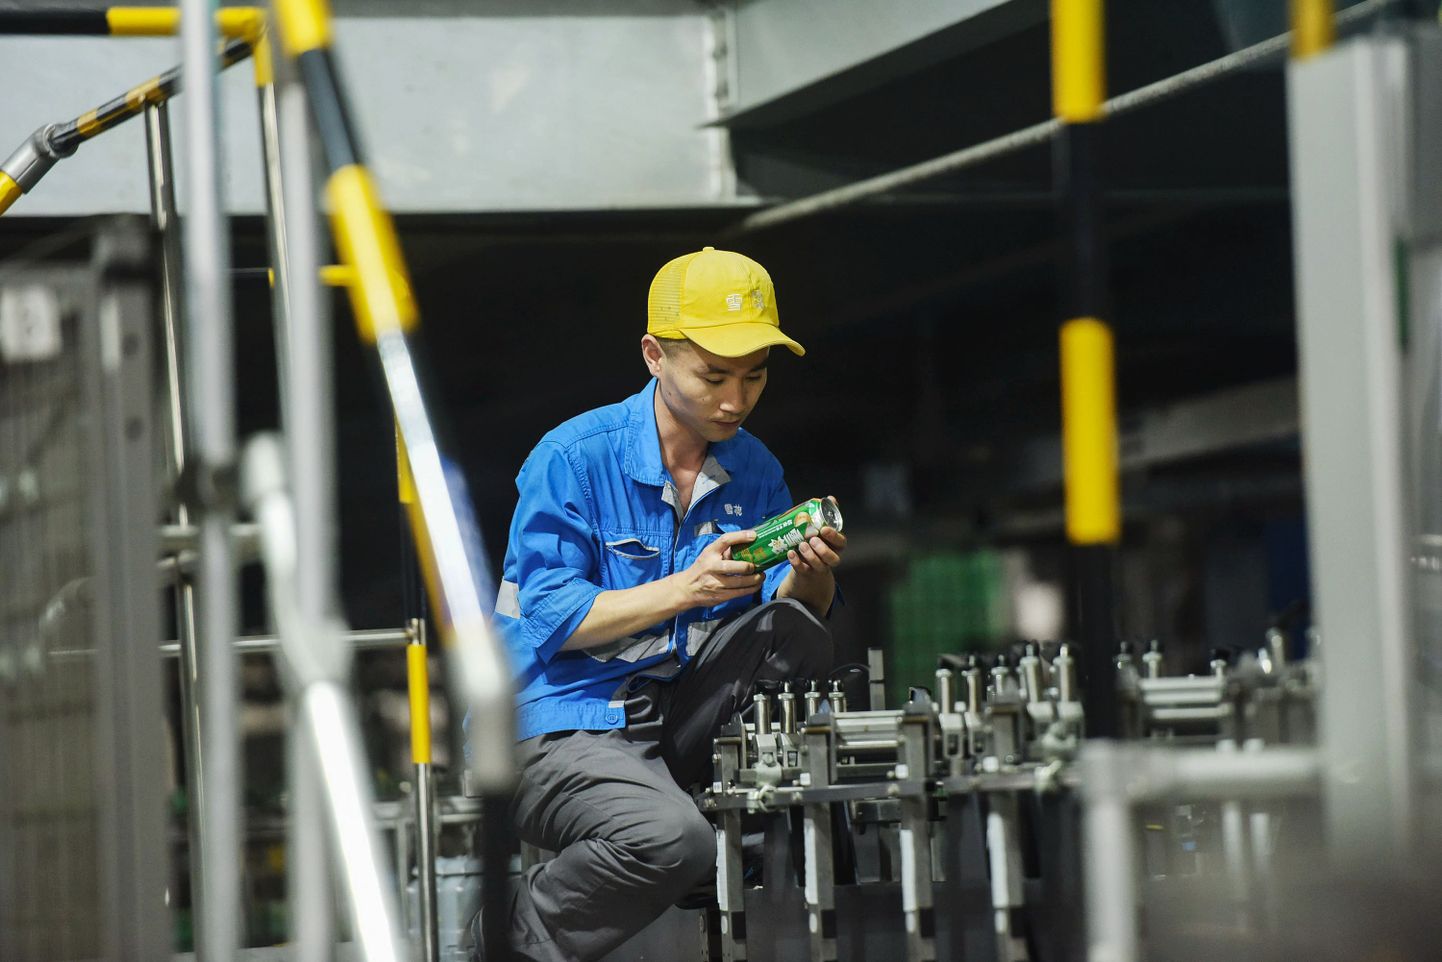 Hiina õlletehase töötaja kontrollib õllepurkidele trükitud teksti õigsust.